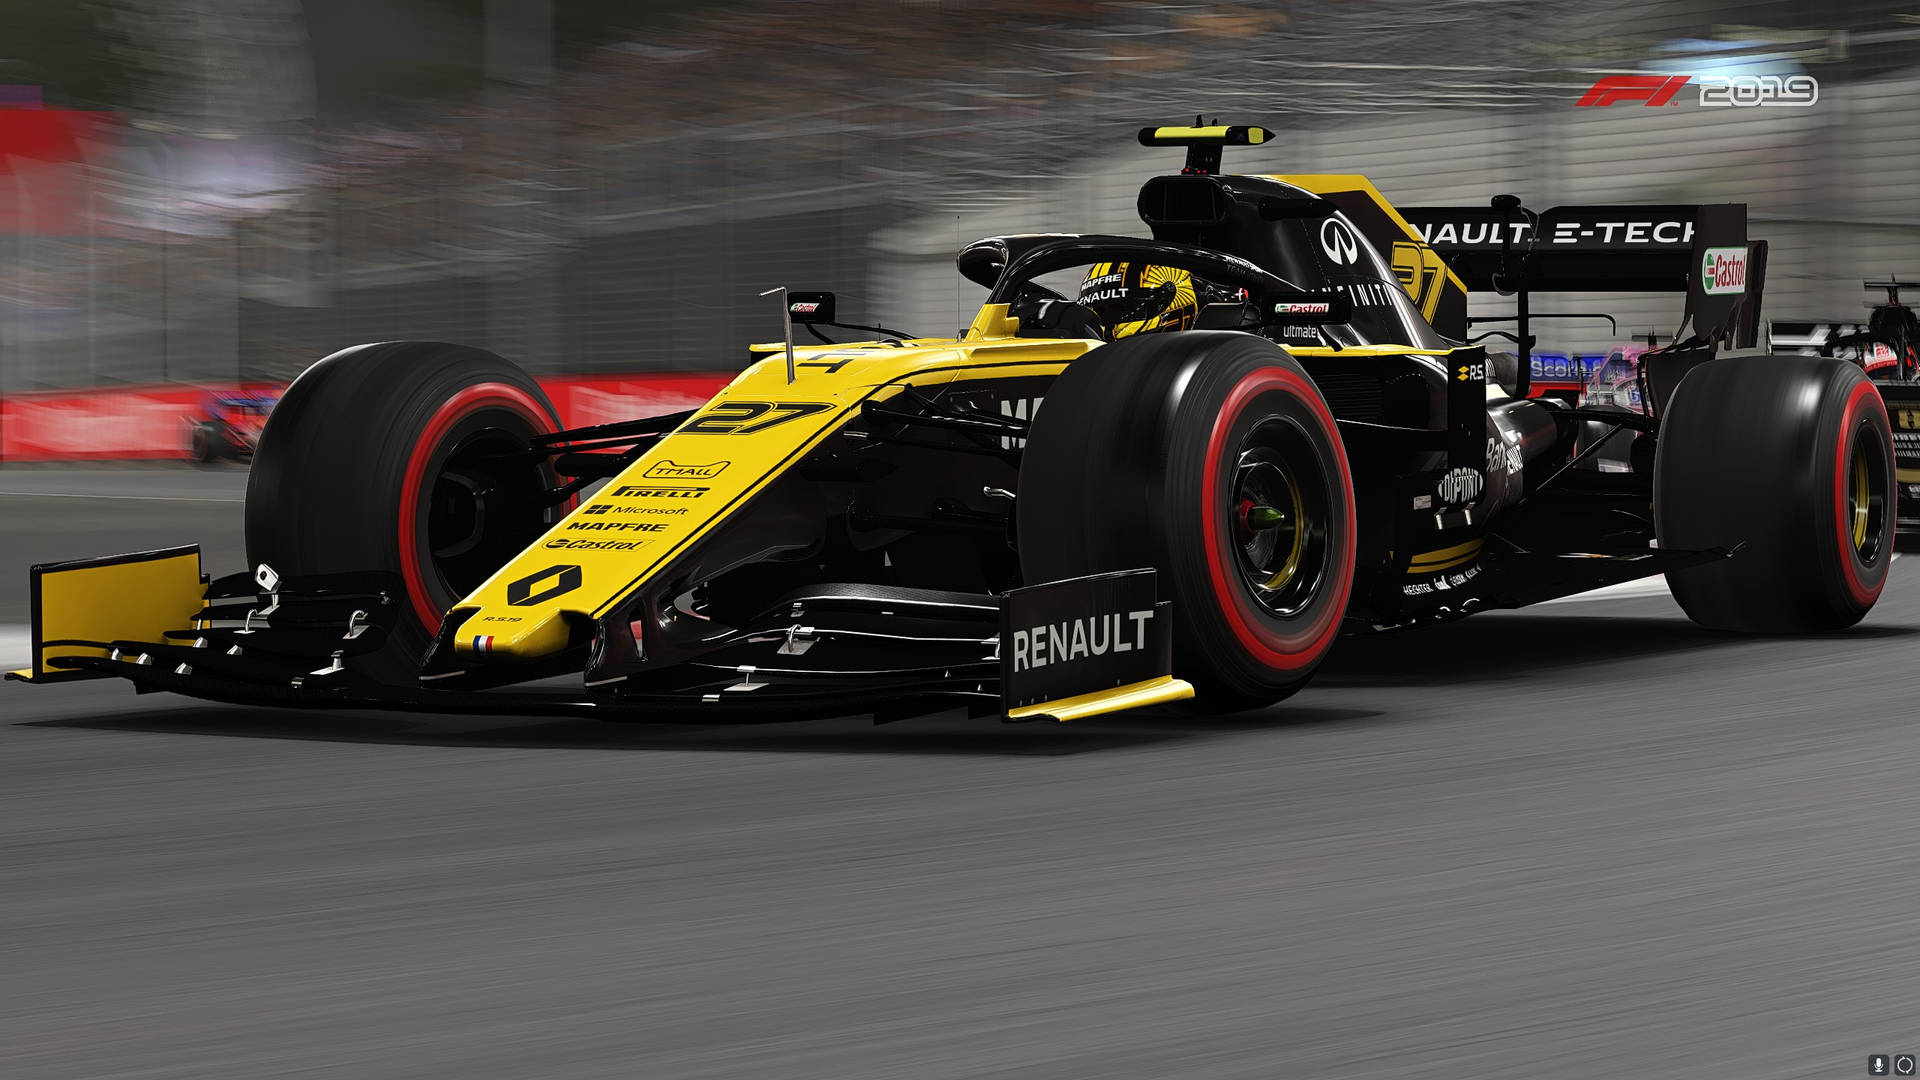 Renault#27 Auto In Der Formel 1 2019 Wallpaper